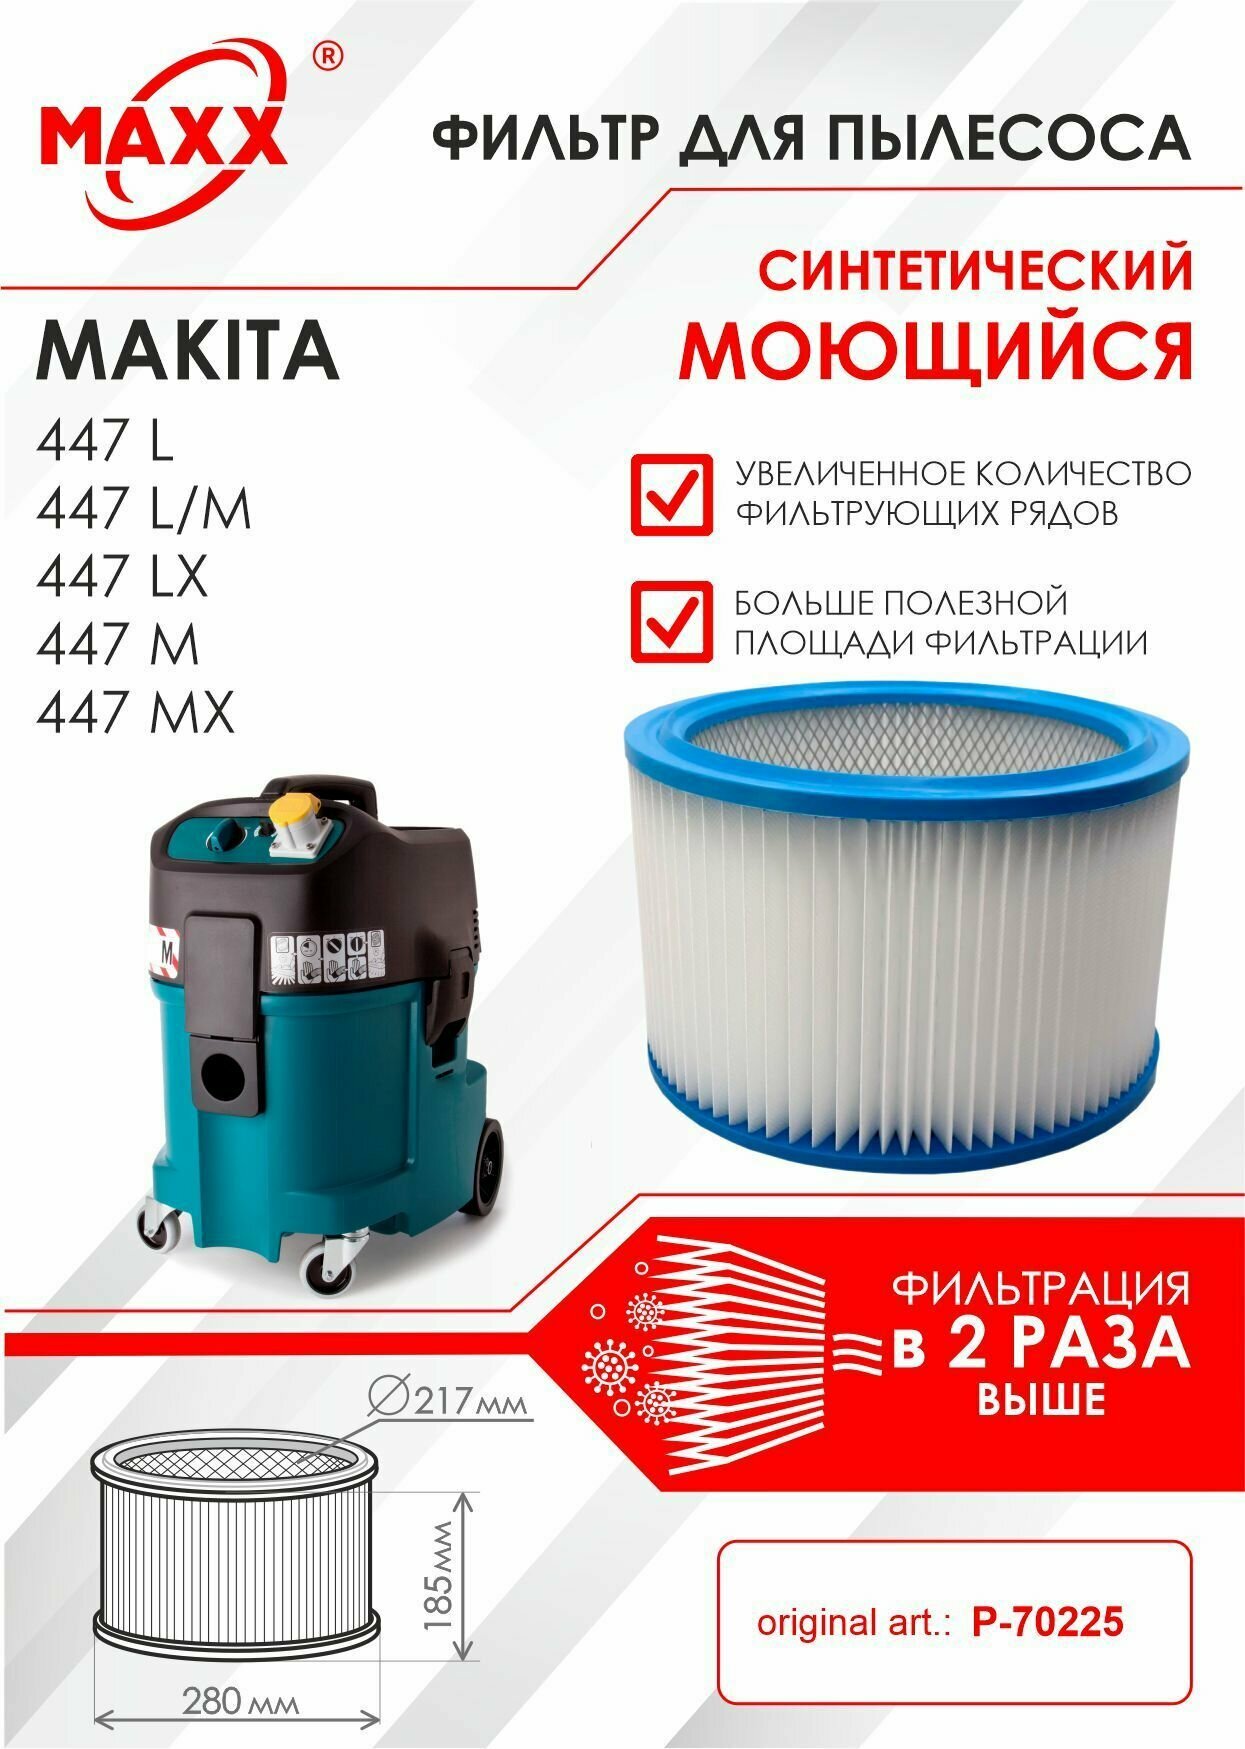 Фильтр воздушный D275x187 синтетический, моющийся для пылесоса Makita 447 L (М, LX, MX) art: P-70225